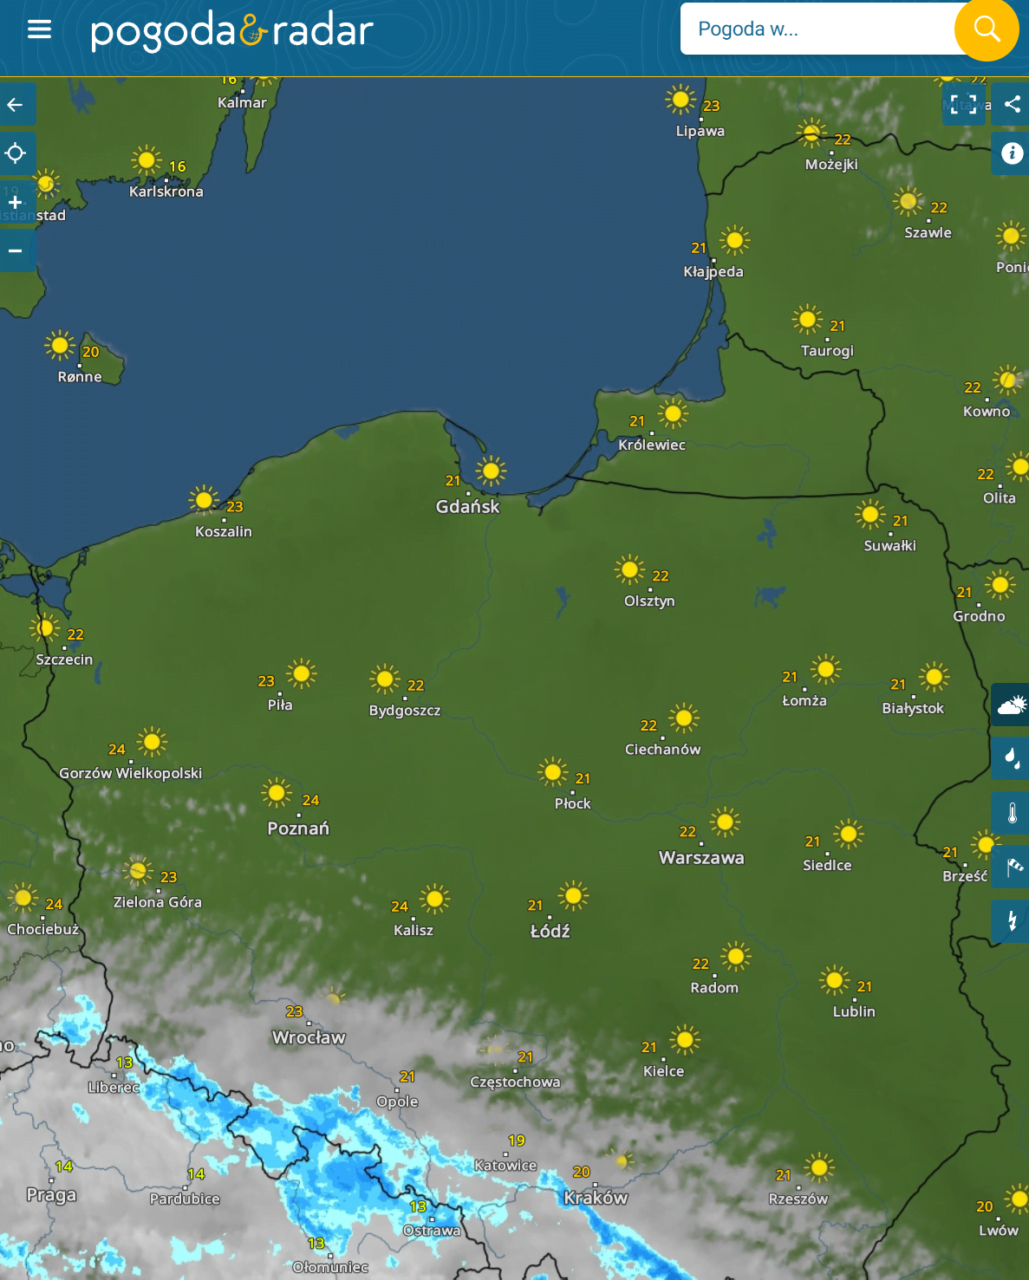 Mapa Polski z prognozą pogody, przedstawiająca słoneczne ikony i temperatury w różnych miastach, na północy od 16°C w Karlskronie do 24°C w Kaliszu, a na południu, w rejonie Wrocławia i Opola, zanotowane opady deszczu.